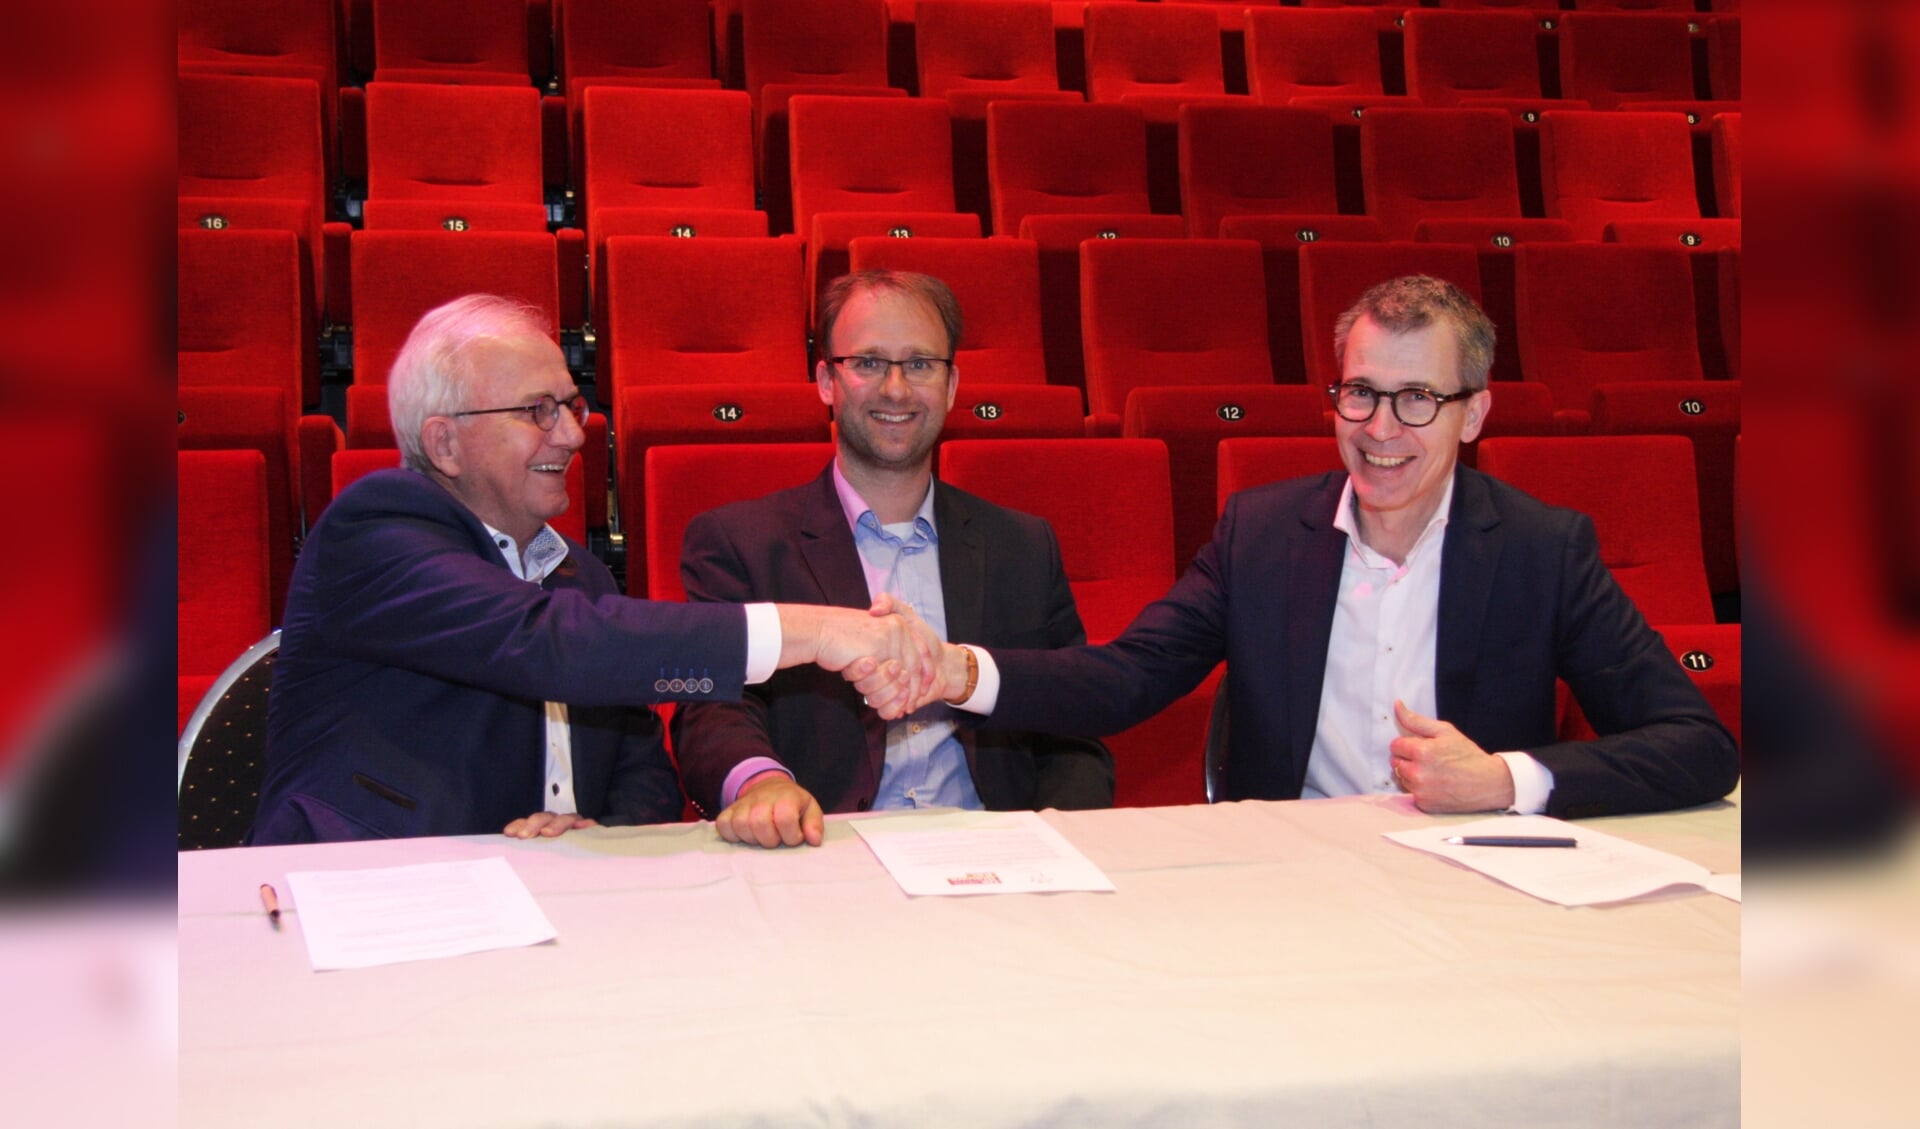 Ondertekening overeenkomst De Blauwe Kei en ’t Spectrum door Harry Vermeulen (R) en Leo van Rozendaal (L) in het bijzijn van wethouder Roozendaal (foto: Ferry Tausch). 